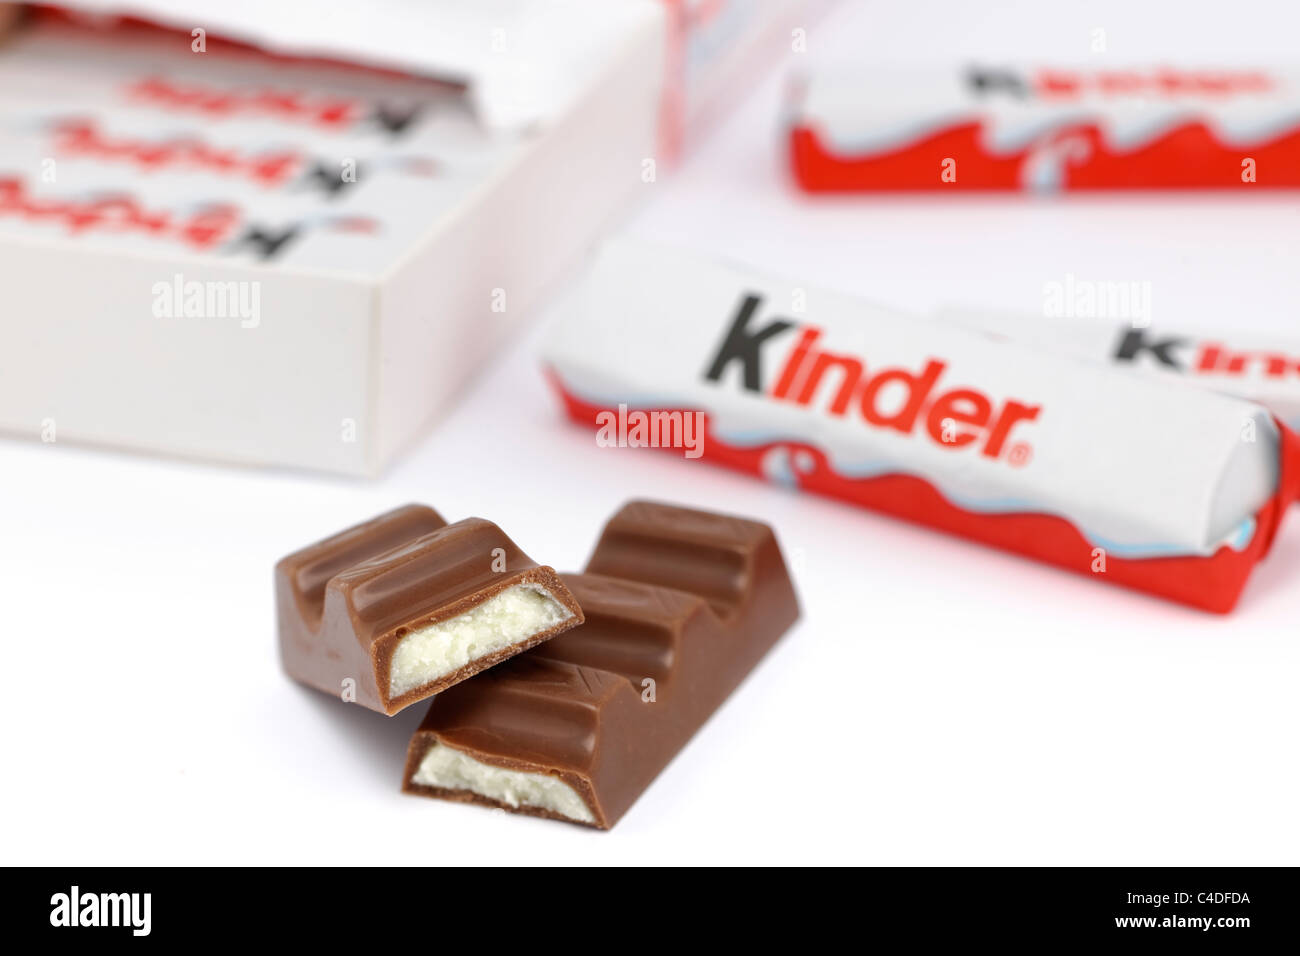 Kinder mini treats chocolate covered cream bars Stock Photo